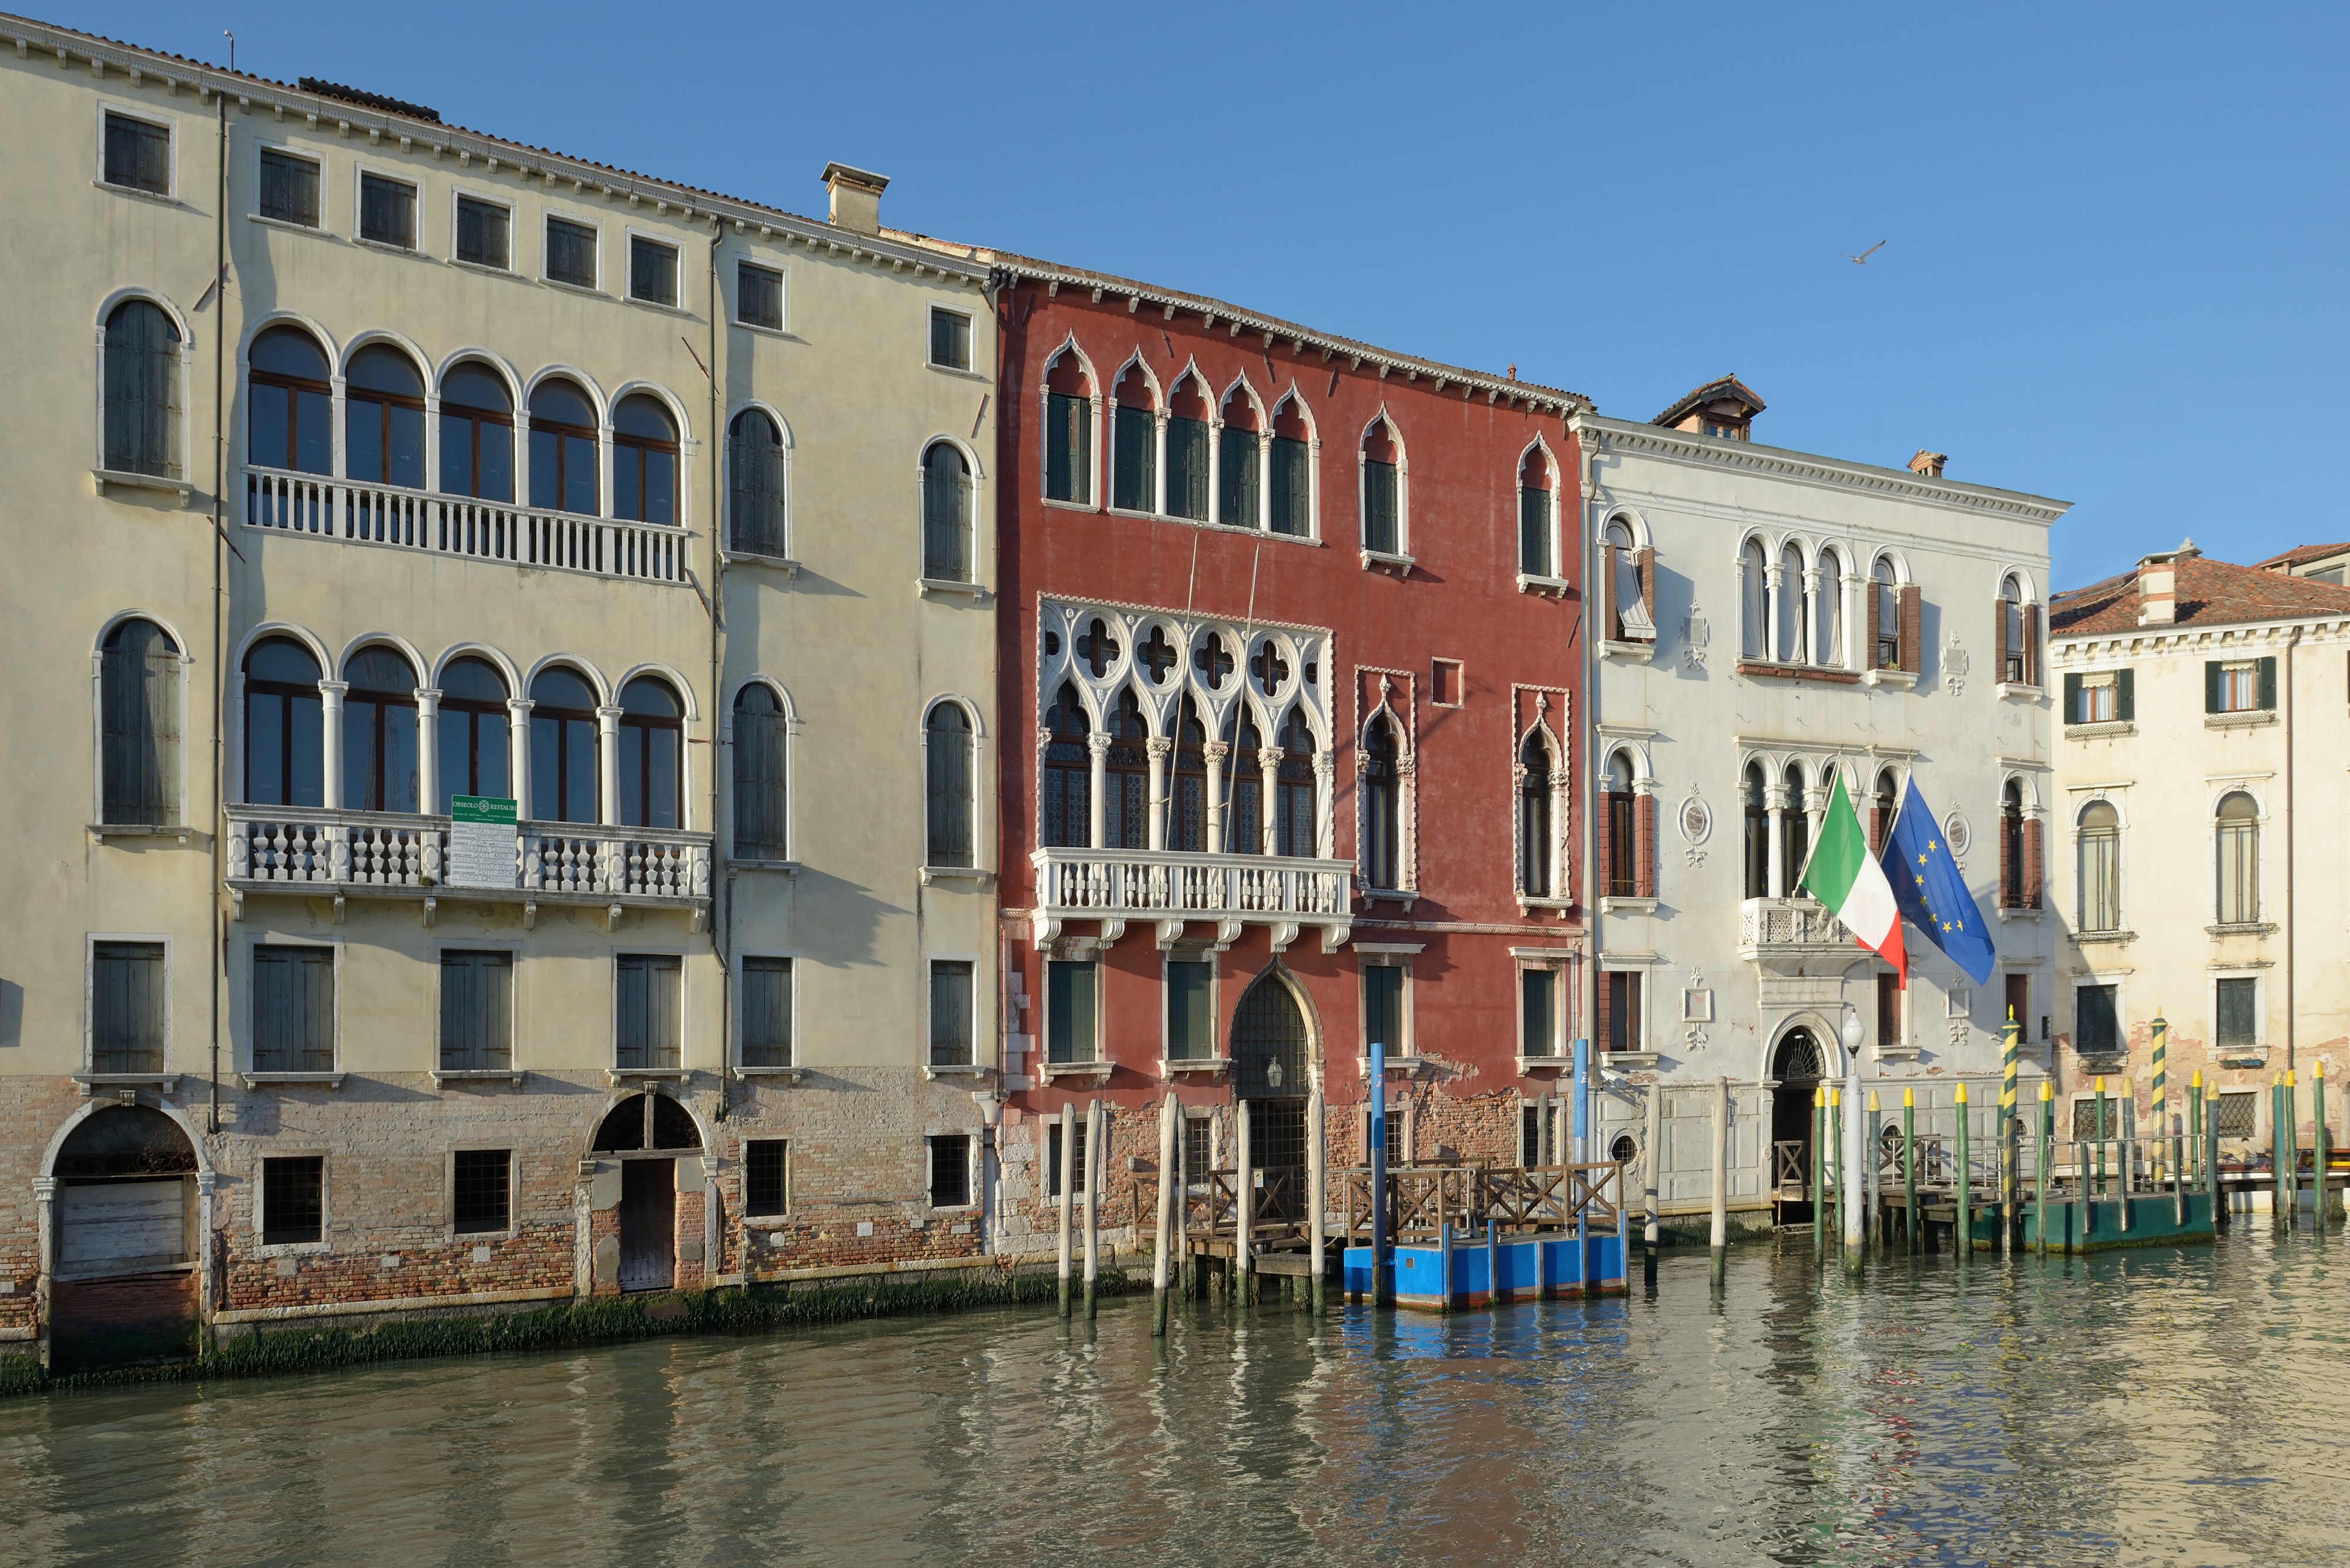 Palazzi Marcello Molin Soranzo Canal Grande Cannaregio Venezia